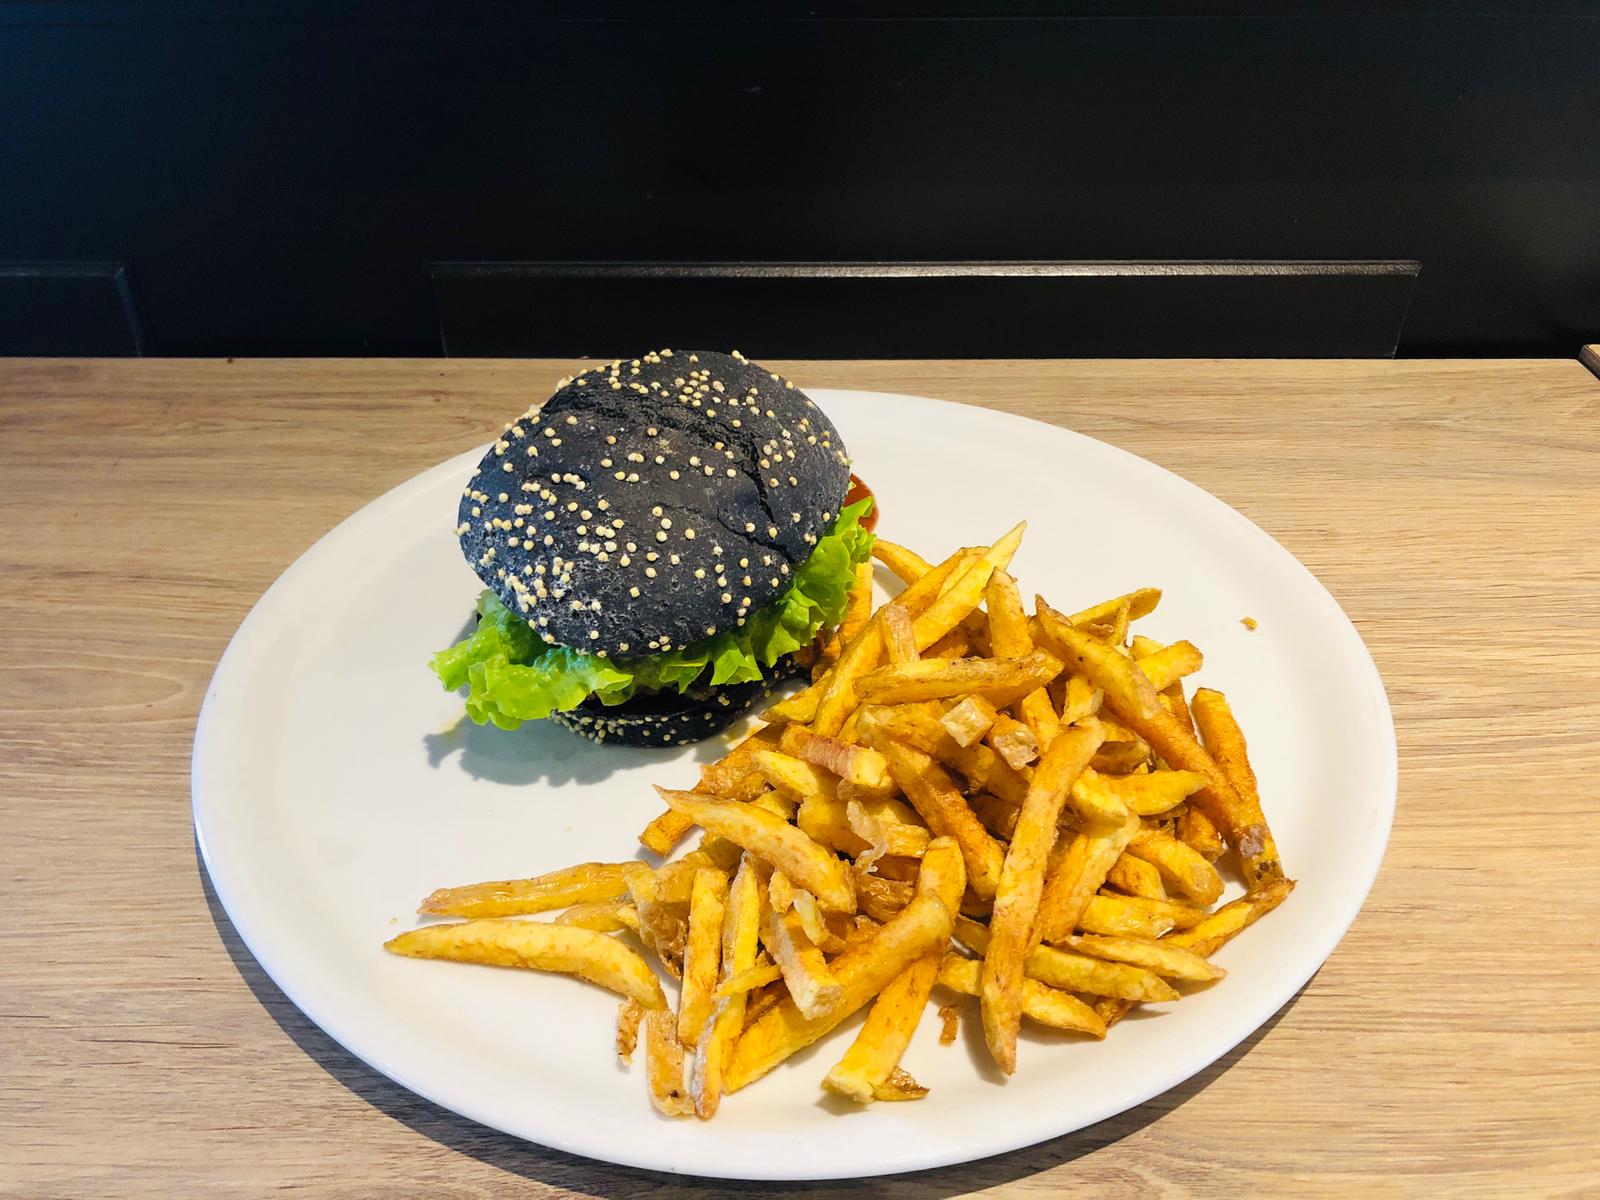 ti-krampouezh-creperie-bord-de-loire-ancenis-burger-04